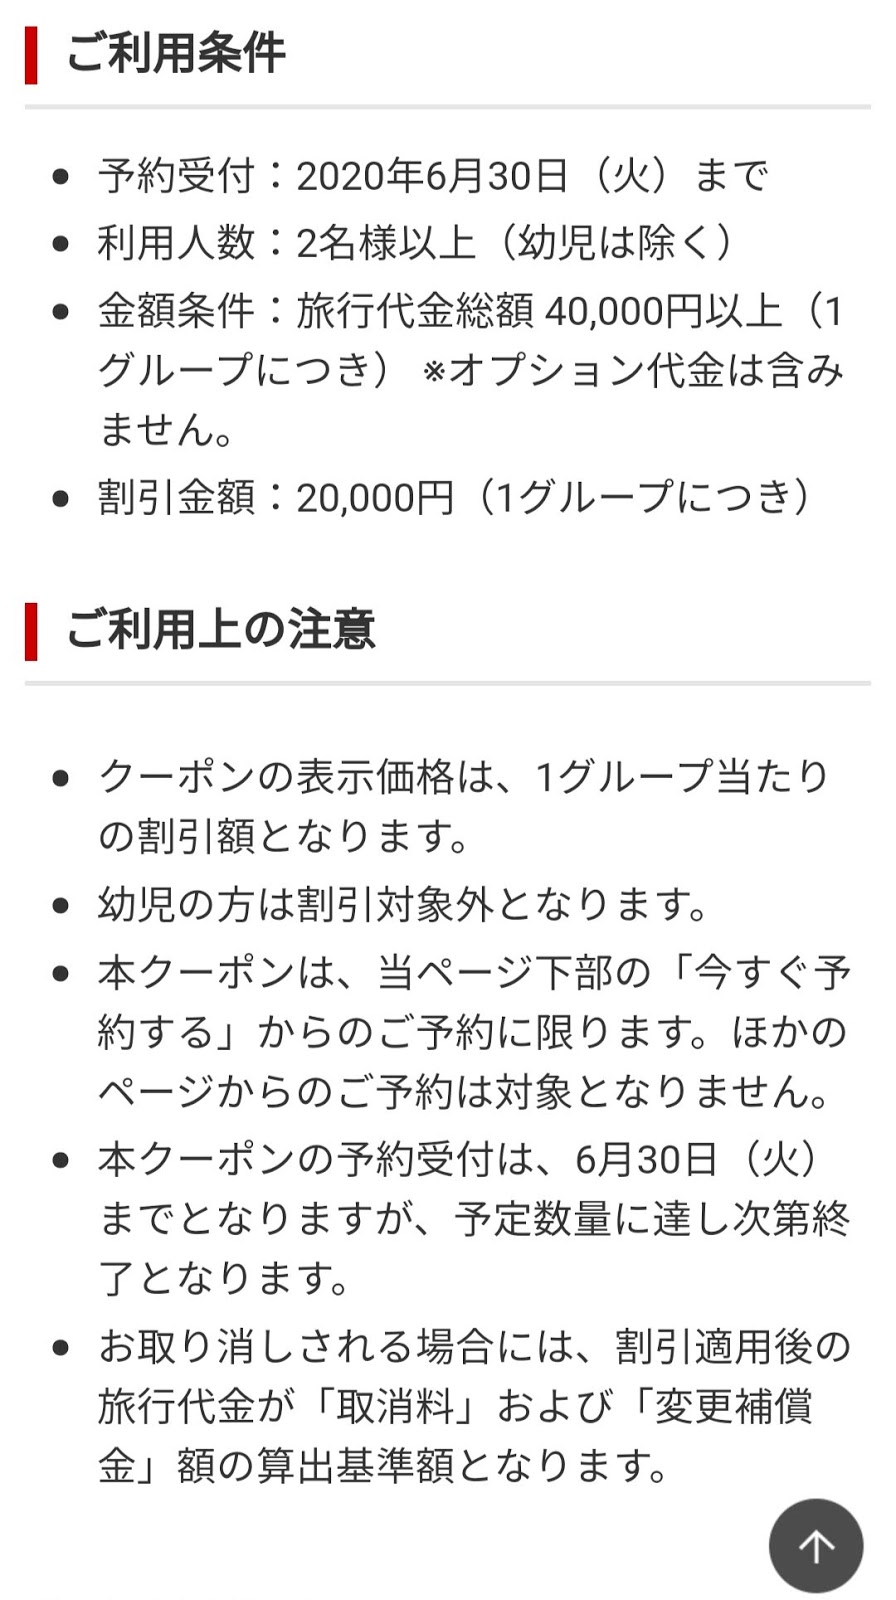 【クーポン】JAL国内ダイナミックパッケージ20,000円offクーポン（2名以上、40,000円以上で利用可）|Yutaka's blog